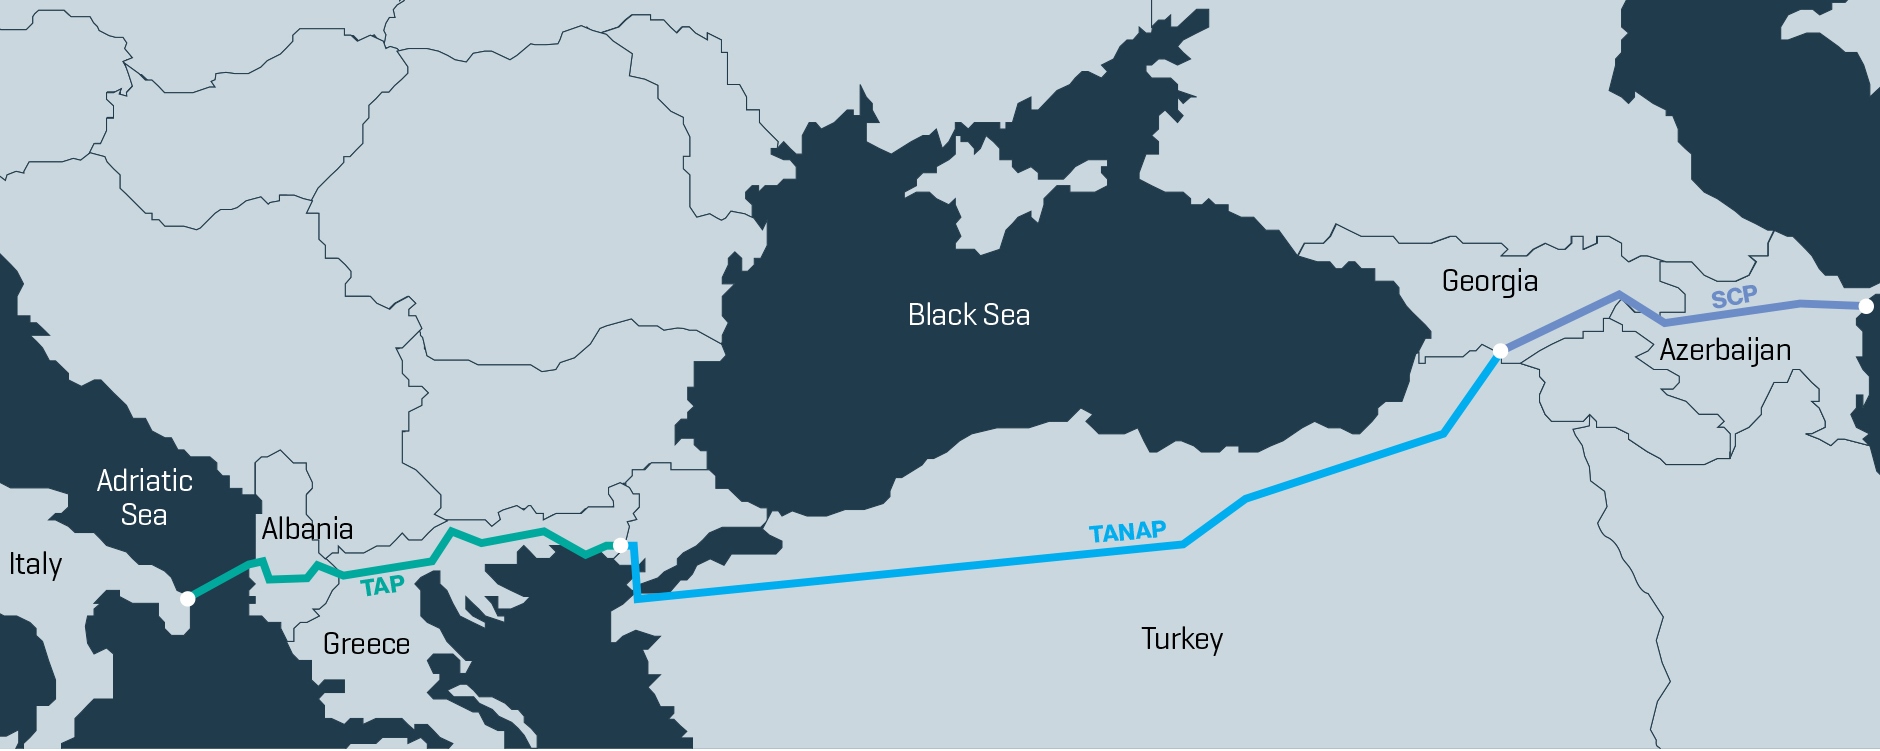 Плохие новости для "Газпрома": Азербайджан успешно запустил газопровод в Европу в обход России - СМИ